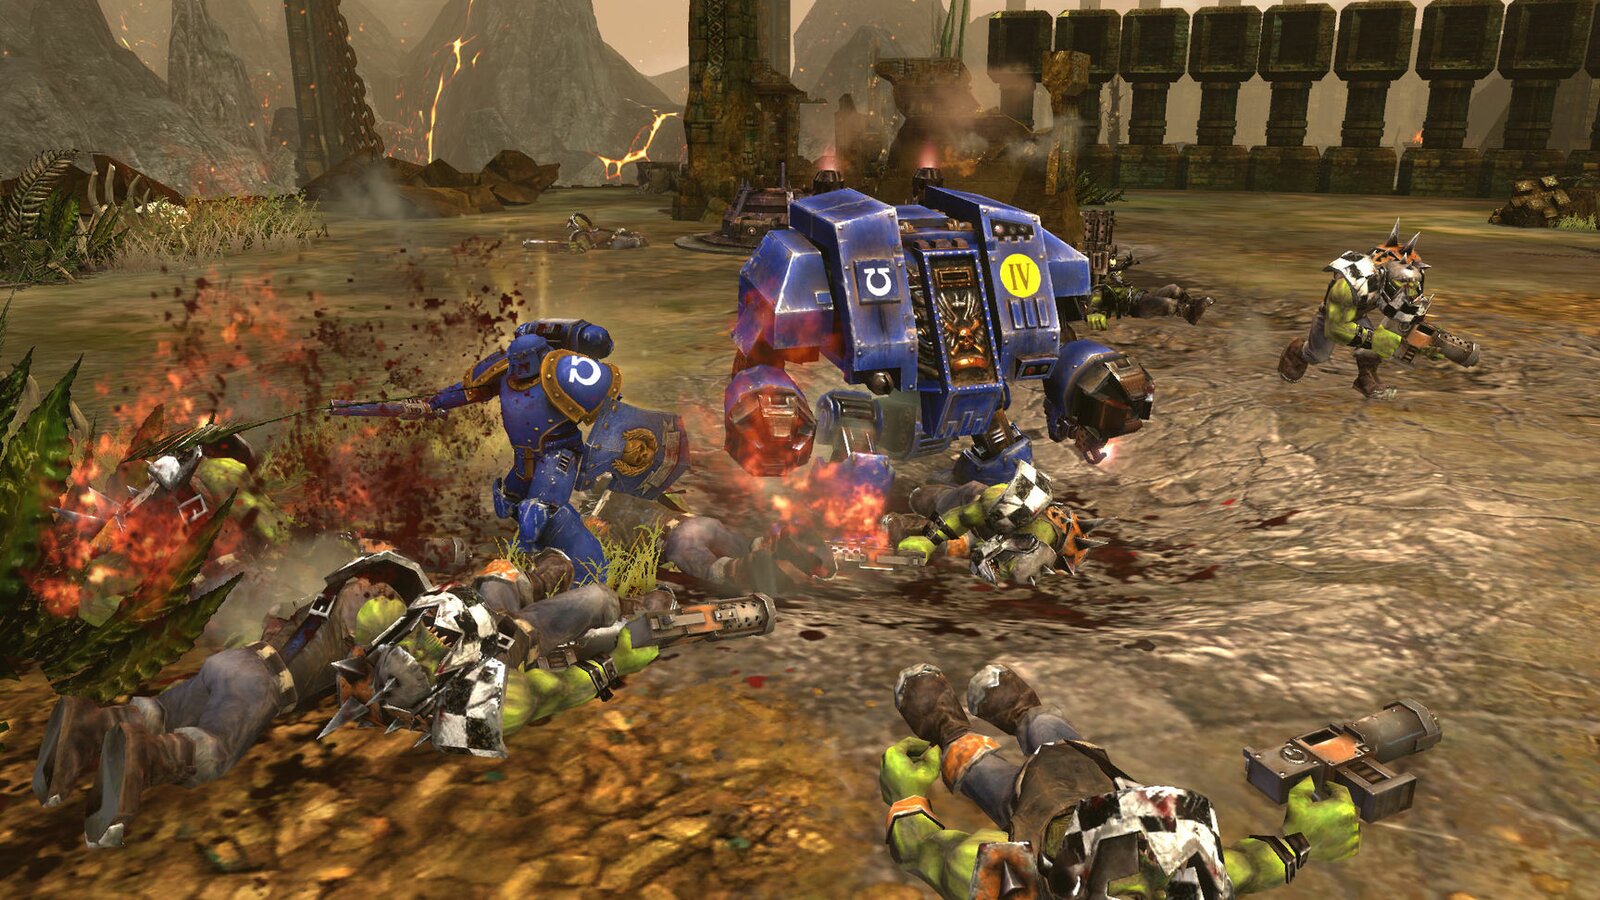 Warhammer 40,000 : Dawn of War II - Retribution - Captain Wargear